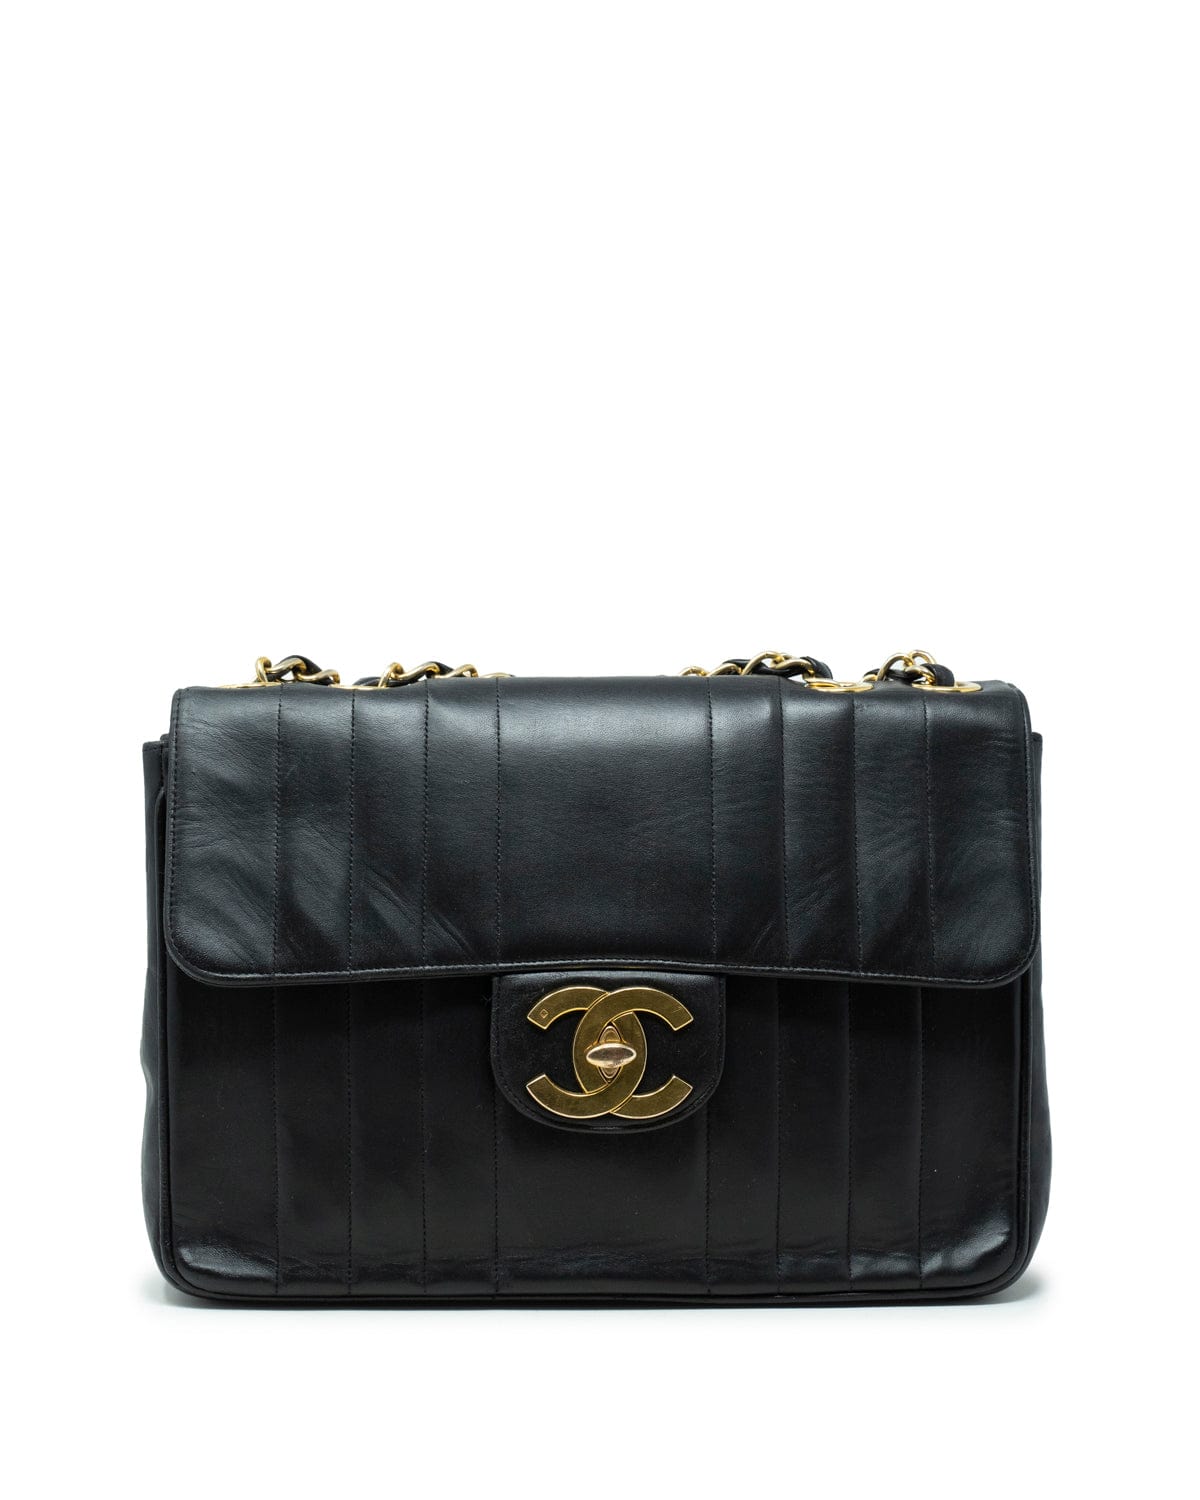 Chanel Vintage Mademoiselle Vertical Stripe Jumbo Shoulder Bag